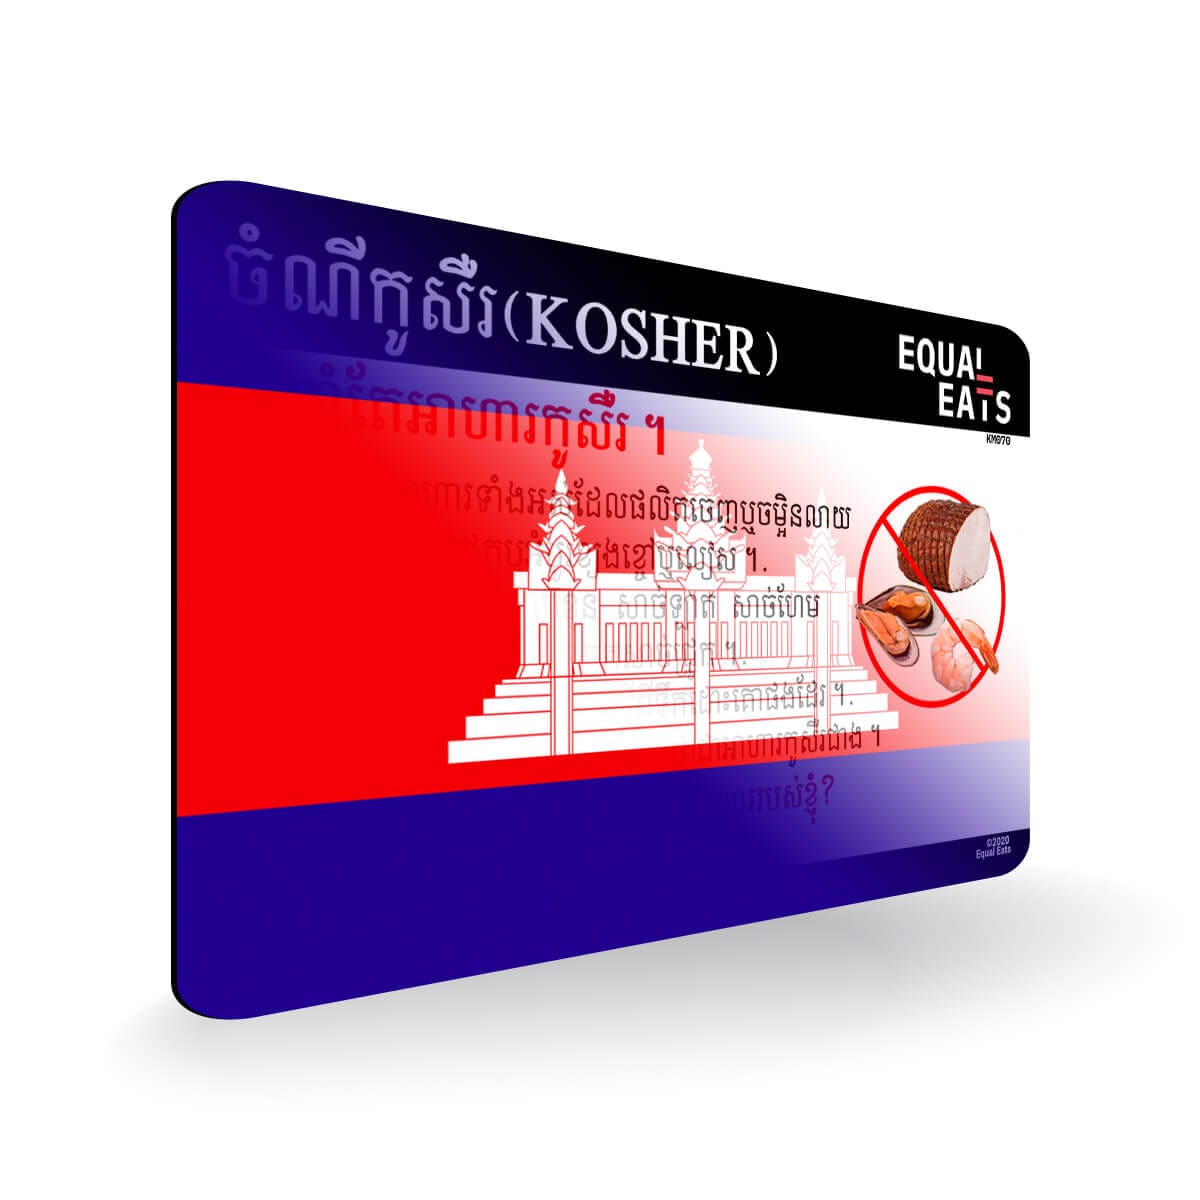 Kosher Diet in Khmer. Kosher Card for Cambodia